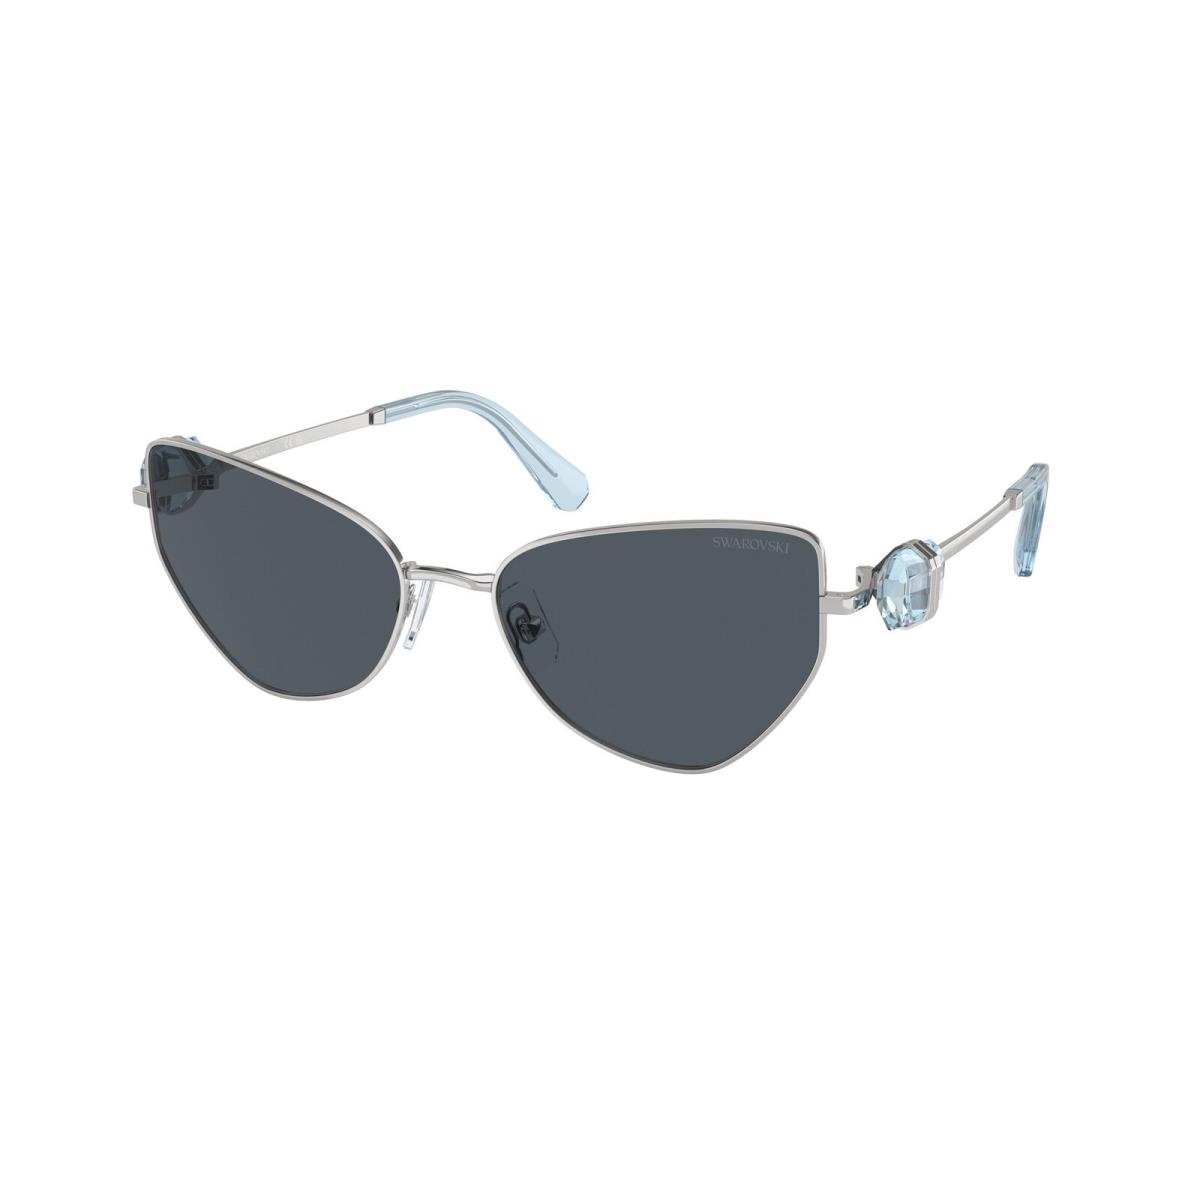 Swarovski 7003 Sunglasses 400187 Silver